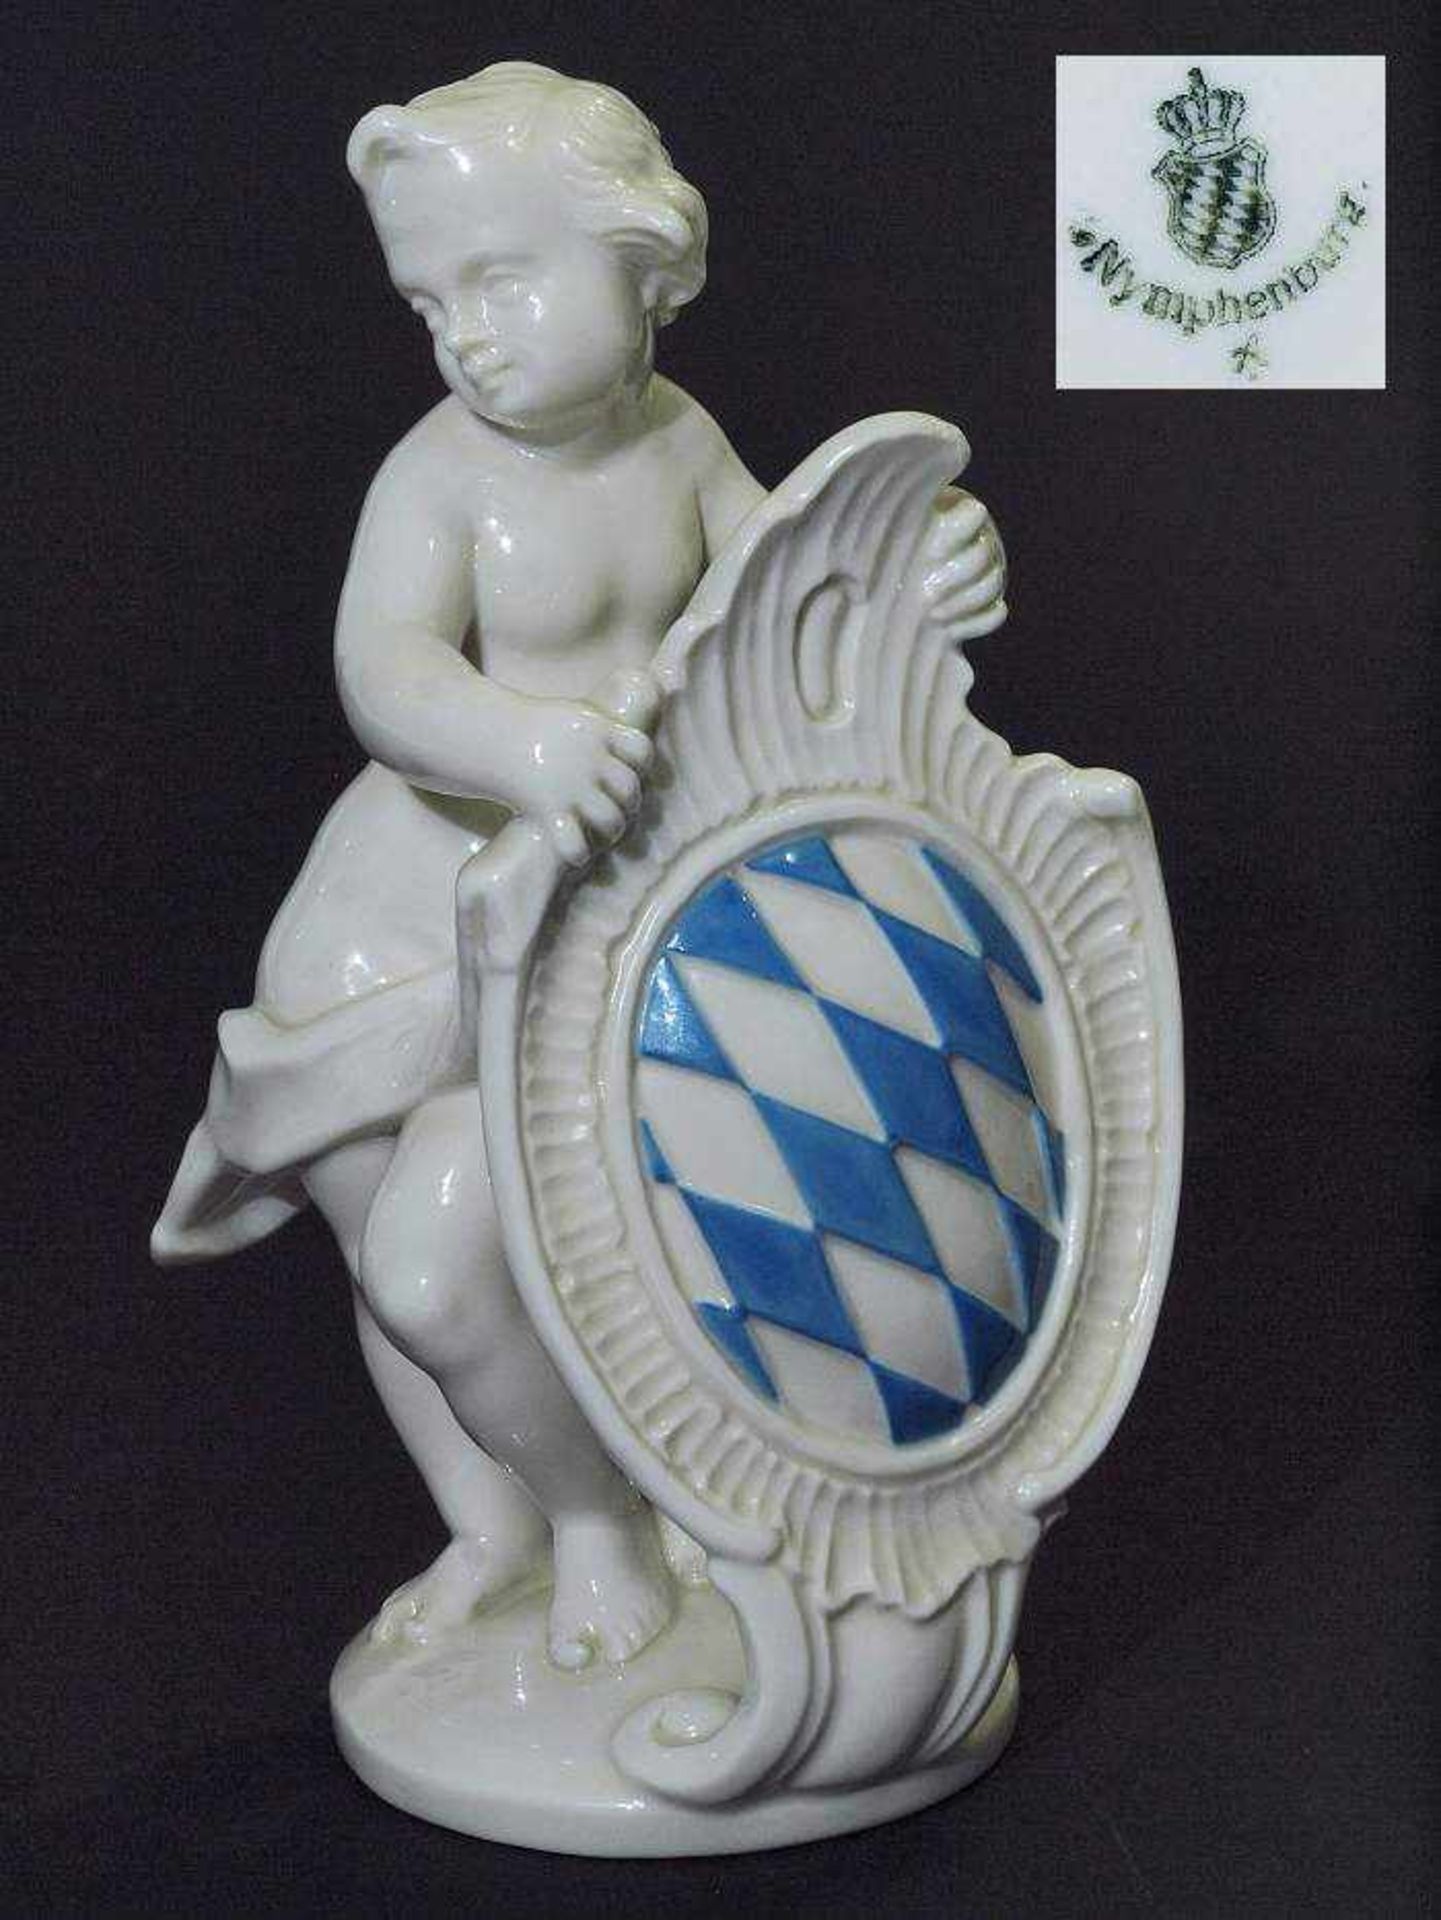 Putto mit bayerischem Wappen. Putto mit bayerischem Wappen. NYMPHENBURG, Marke 1976 - 1997.